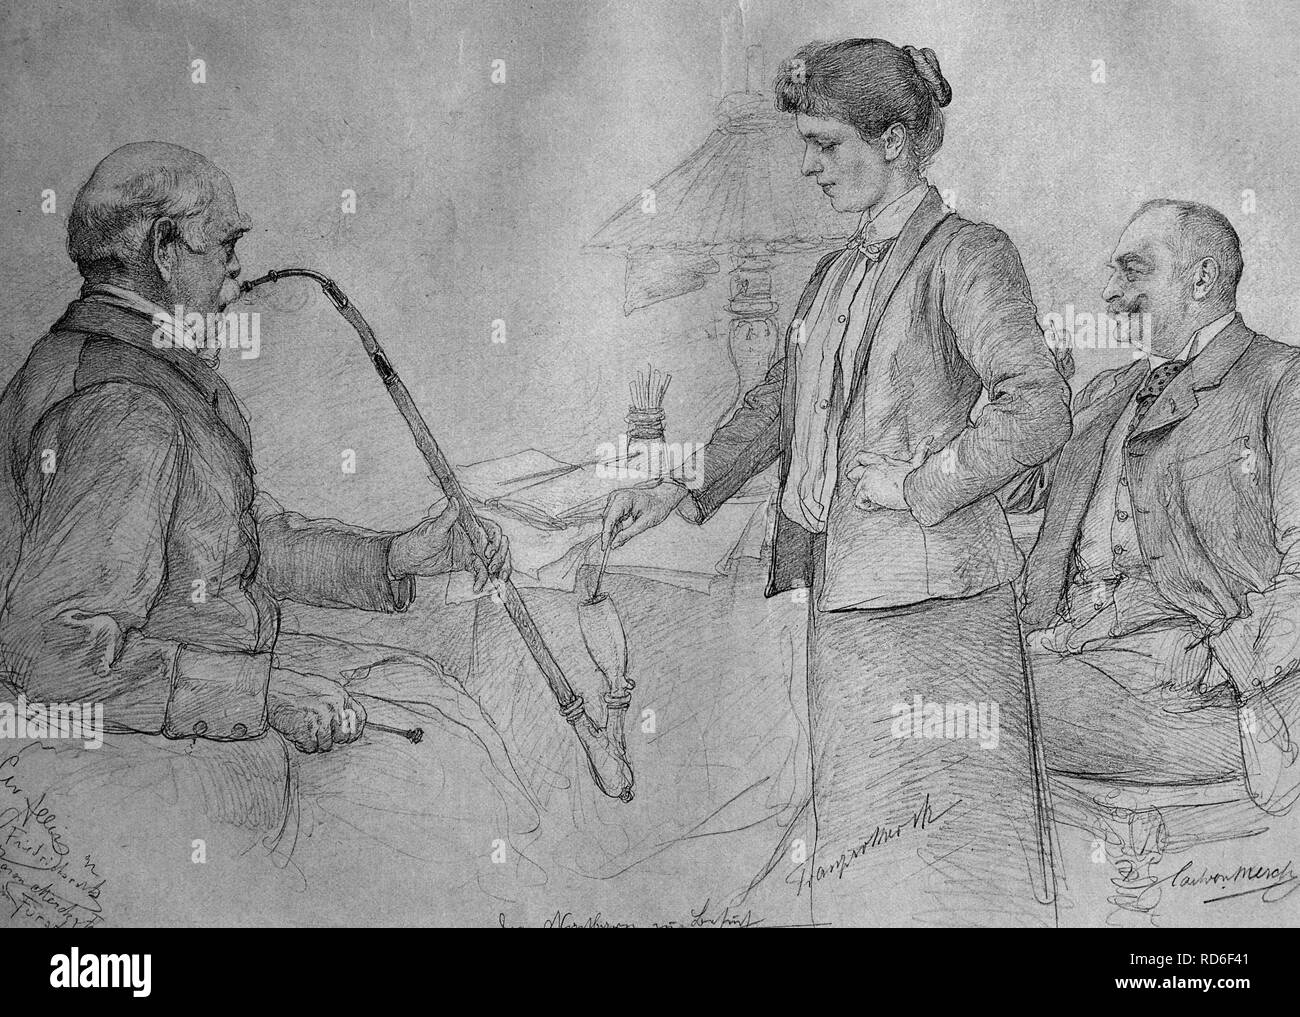 Friedrich von Bismarck smoking a pipe, historical illustration, ca. 1893 Stock Photo